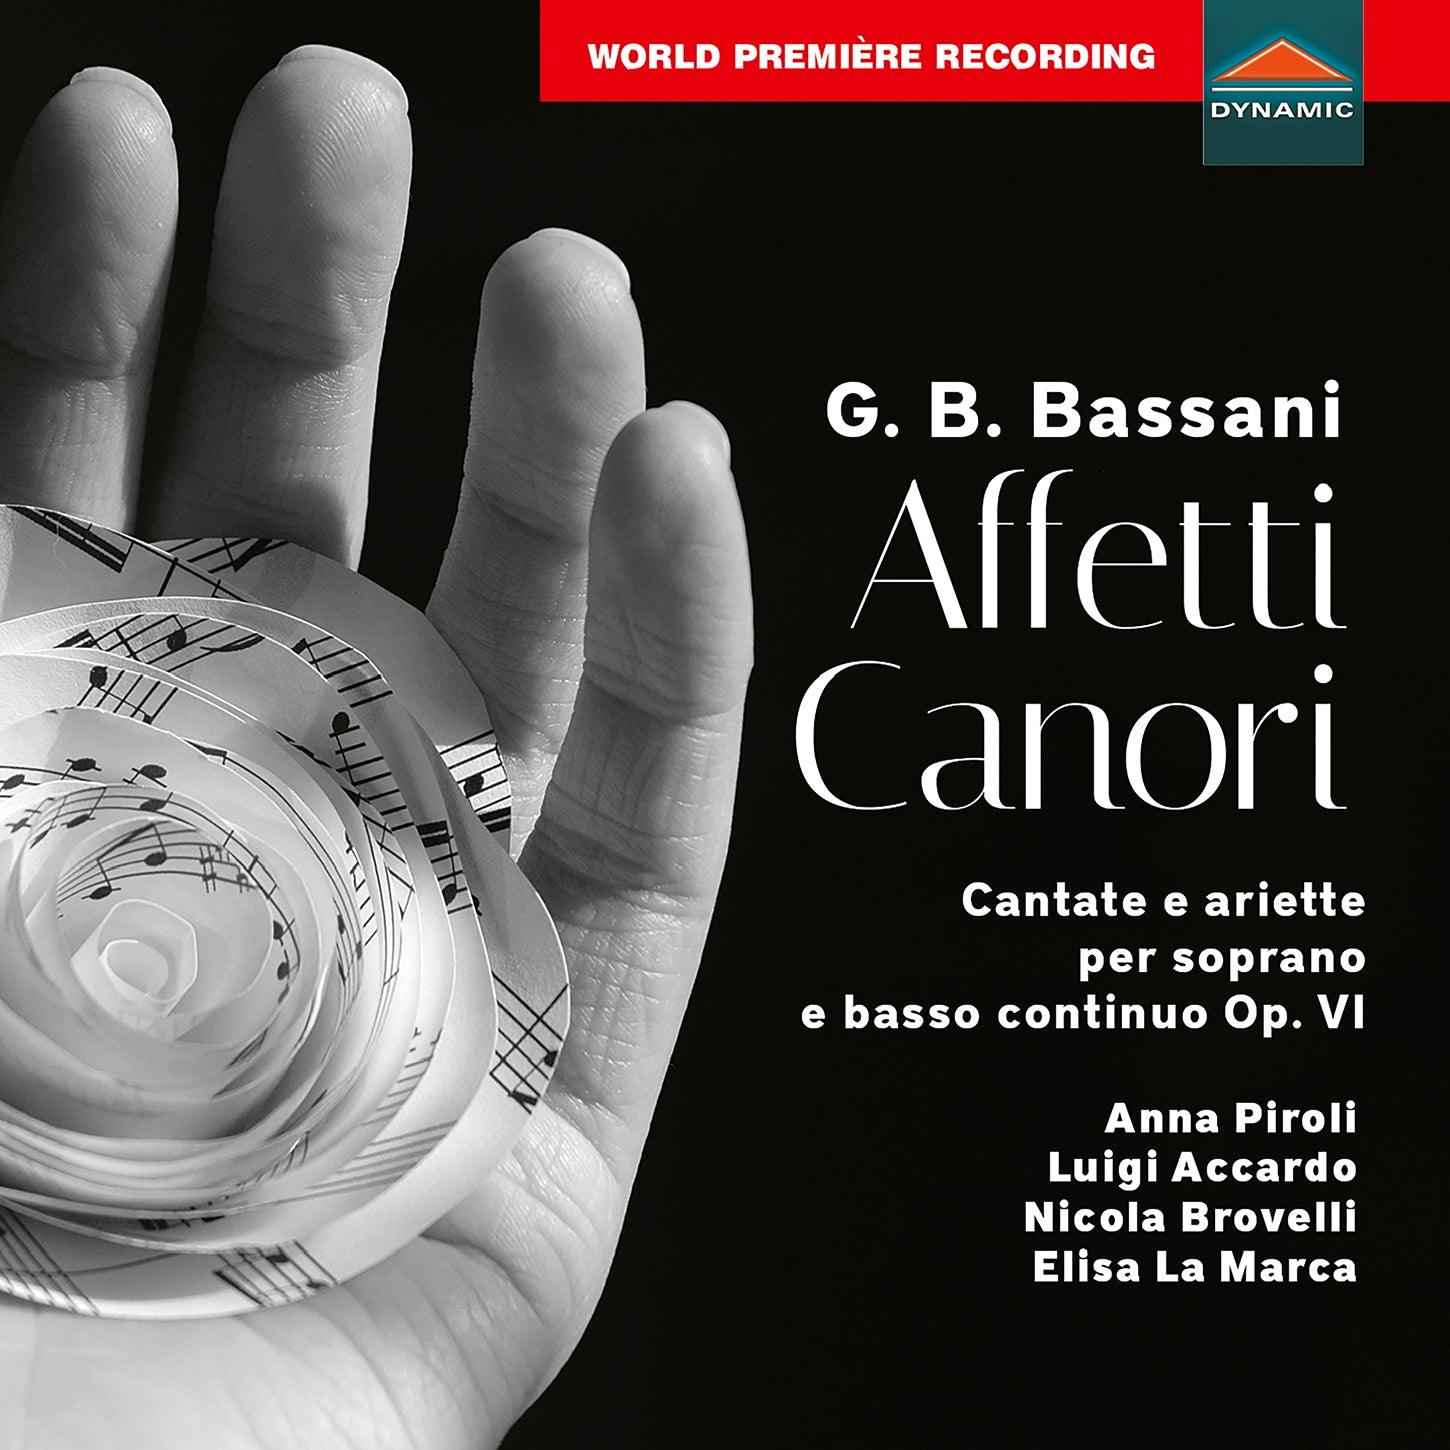 Bassani: Affetti canori Cantate e Arietti / Piroli, Accardo, Brovelli, La Marca - ArkivMusic